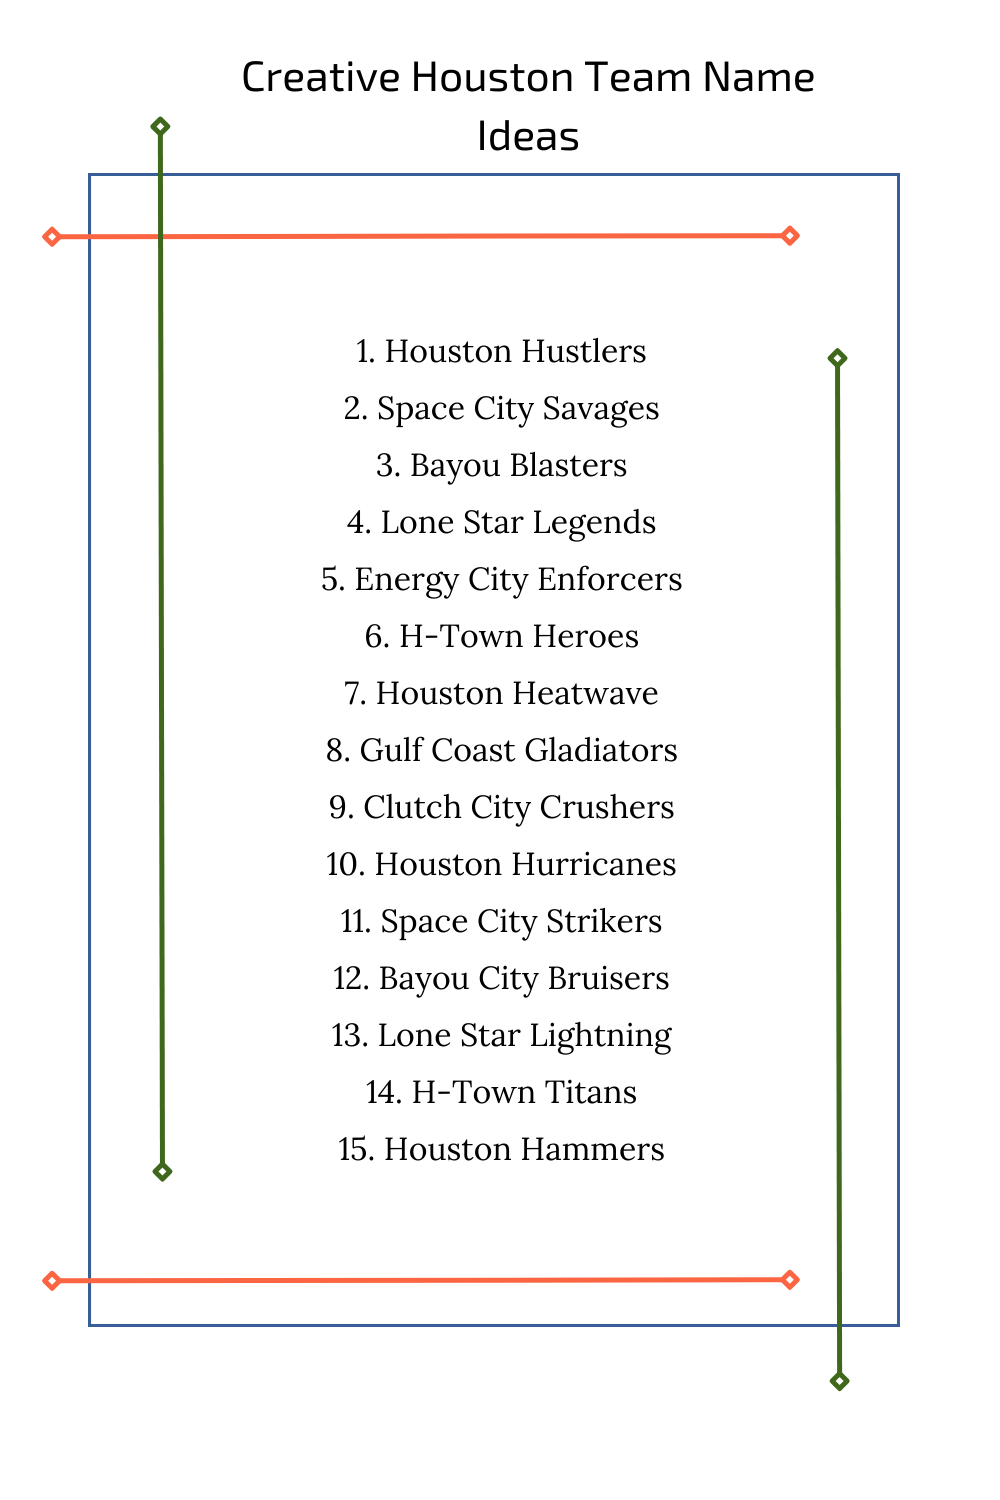 Creative Houston Team Name Ideas